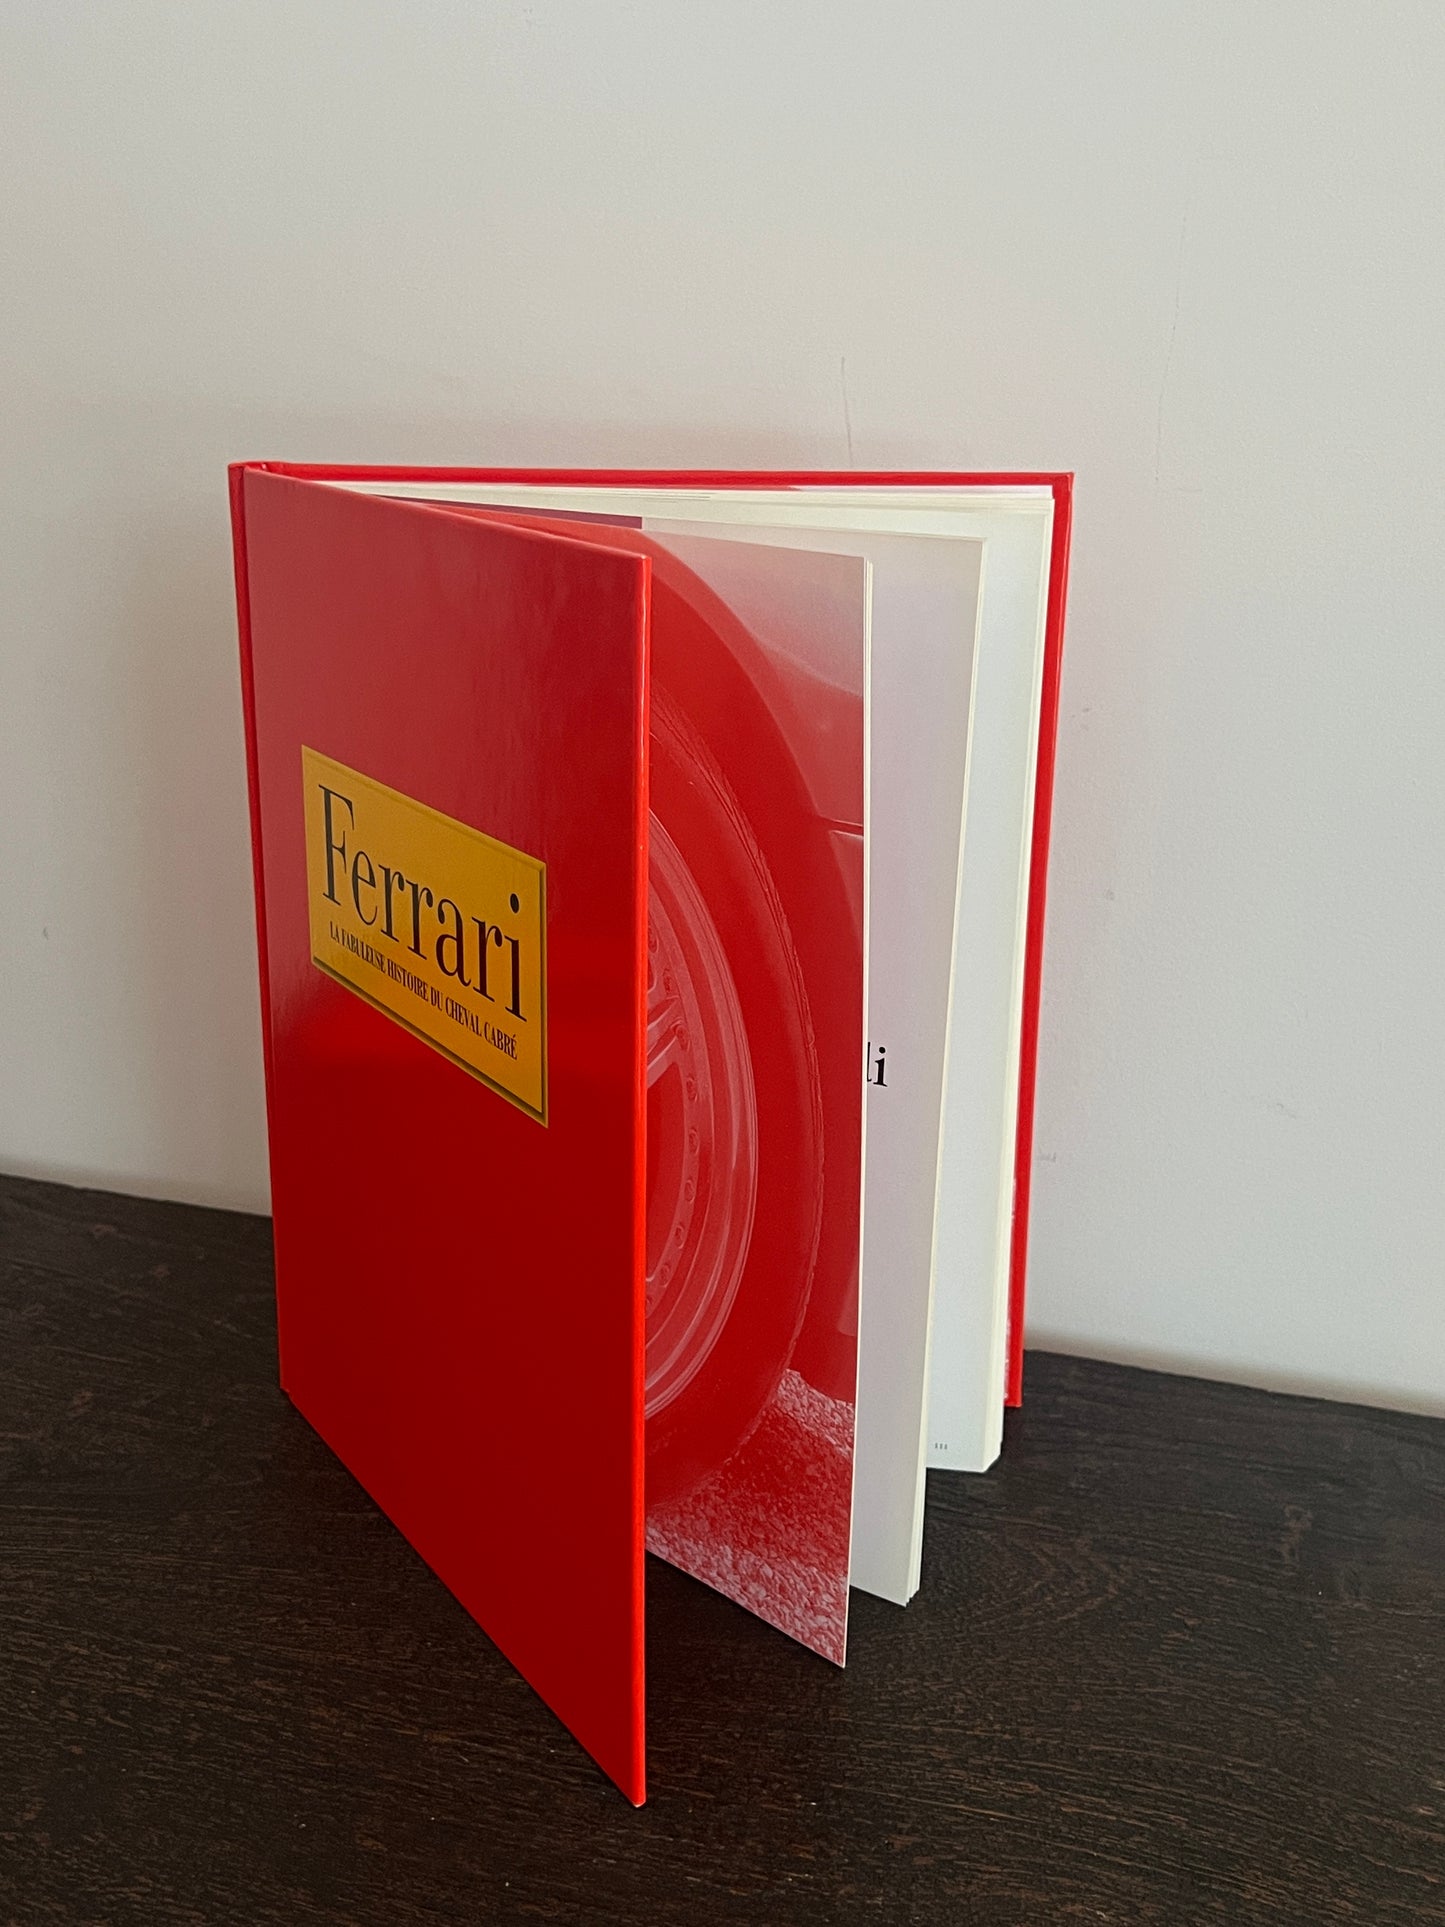 Ferrari - La fabuleuse histoire du cheval cabré by Stuart Gallagher and Helen Smith